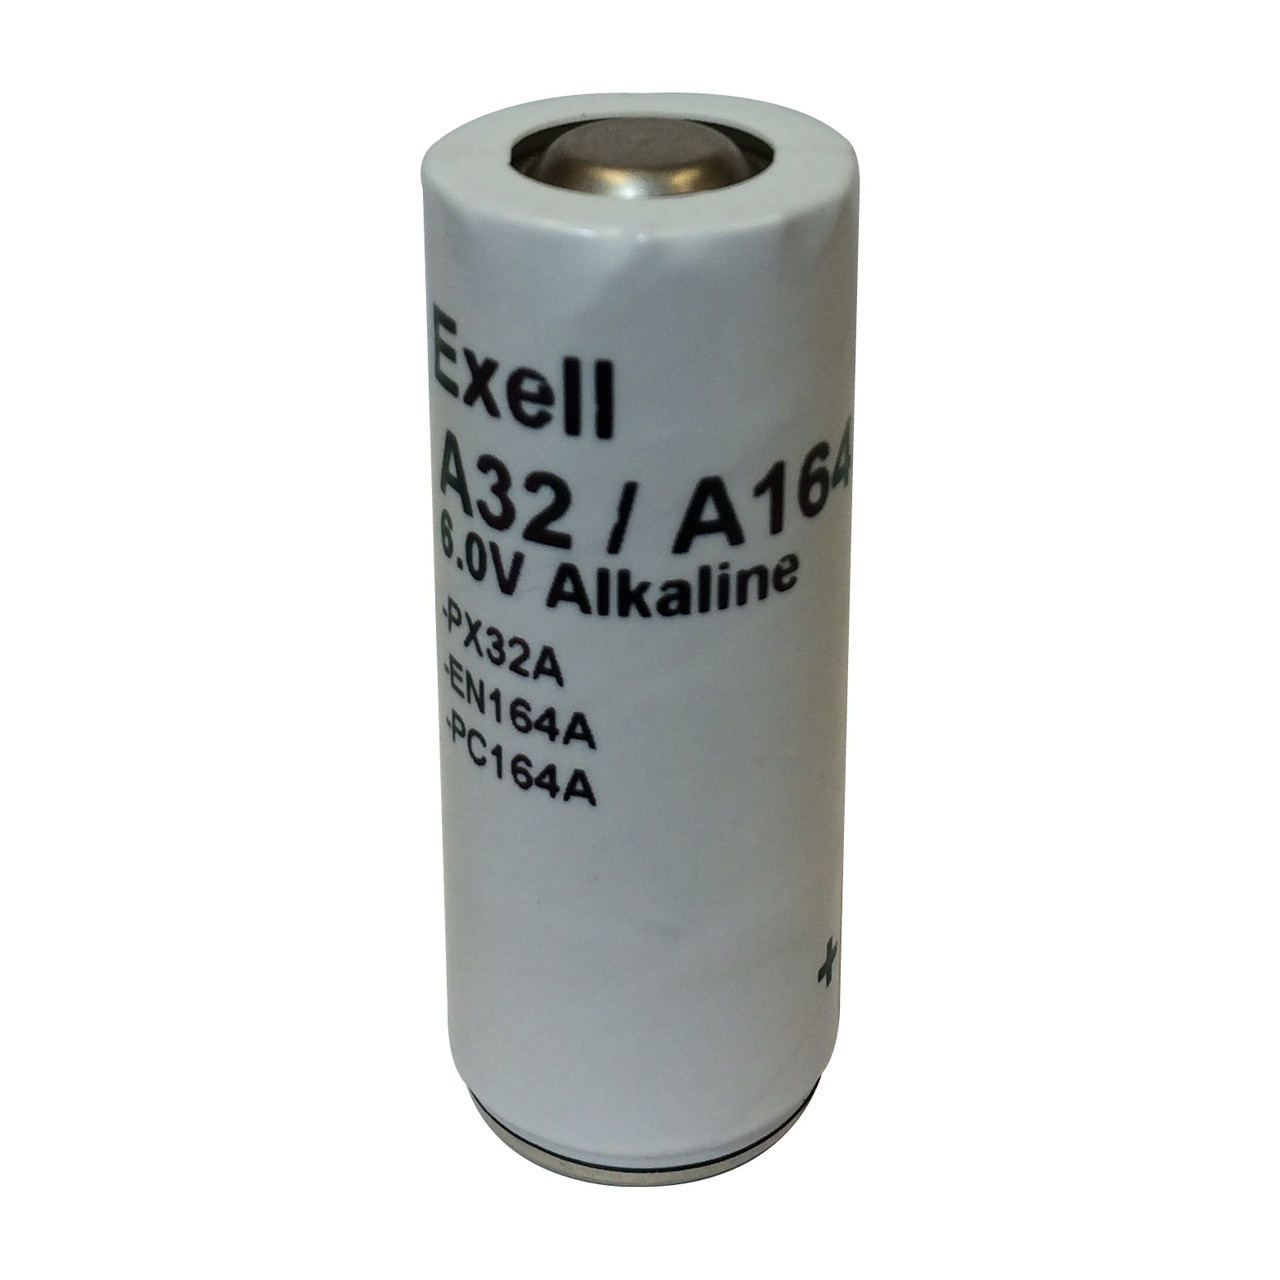 Exell A32PX 6V Alkaline Battery - V32PXA A32PX PX32A TR164A EN164A